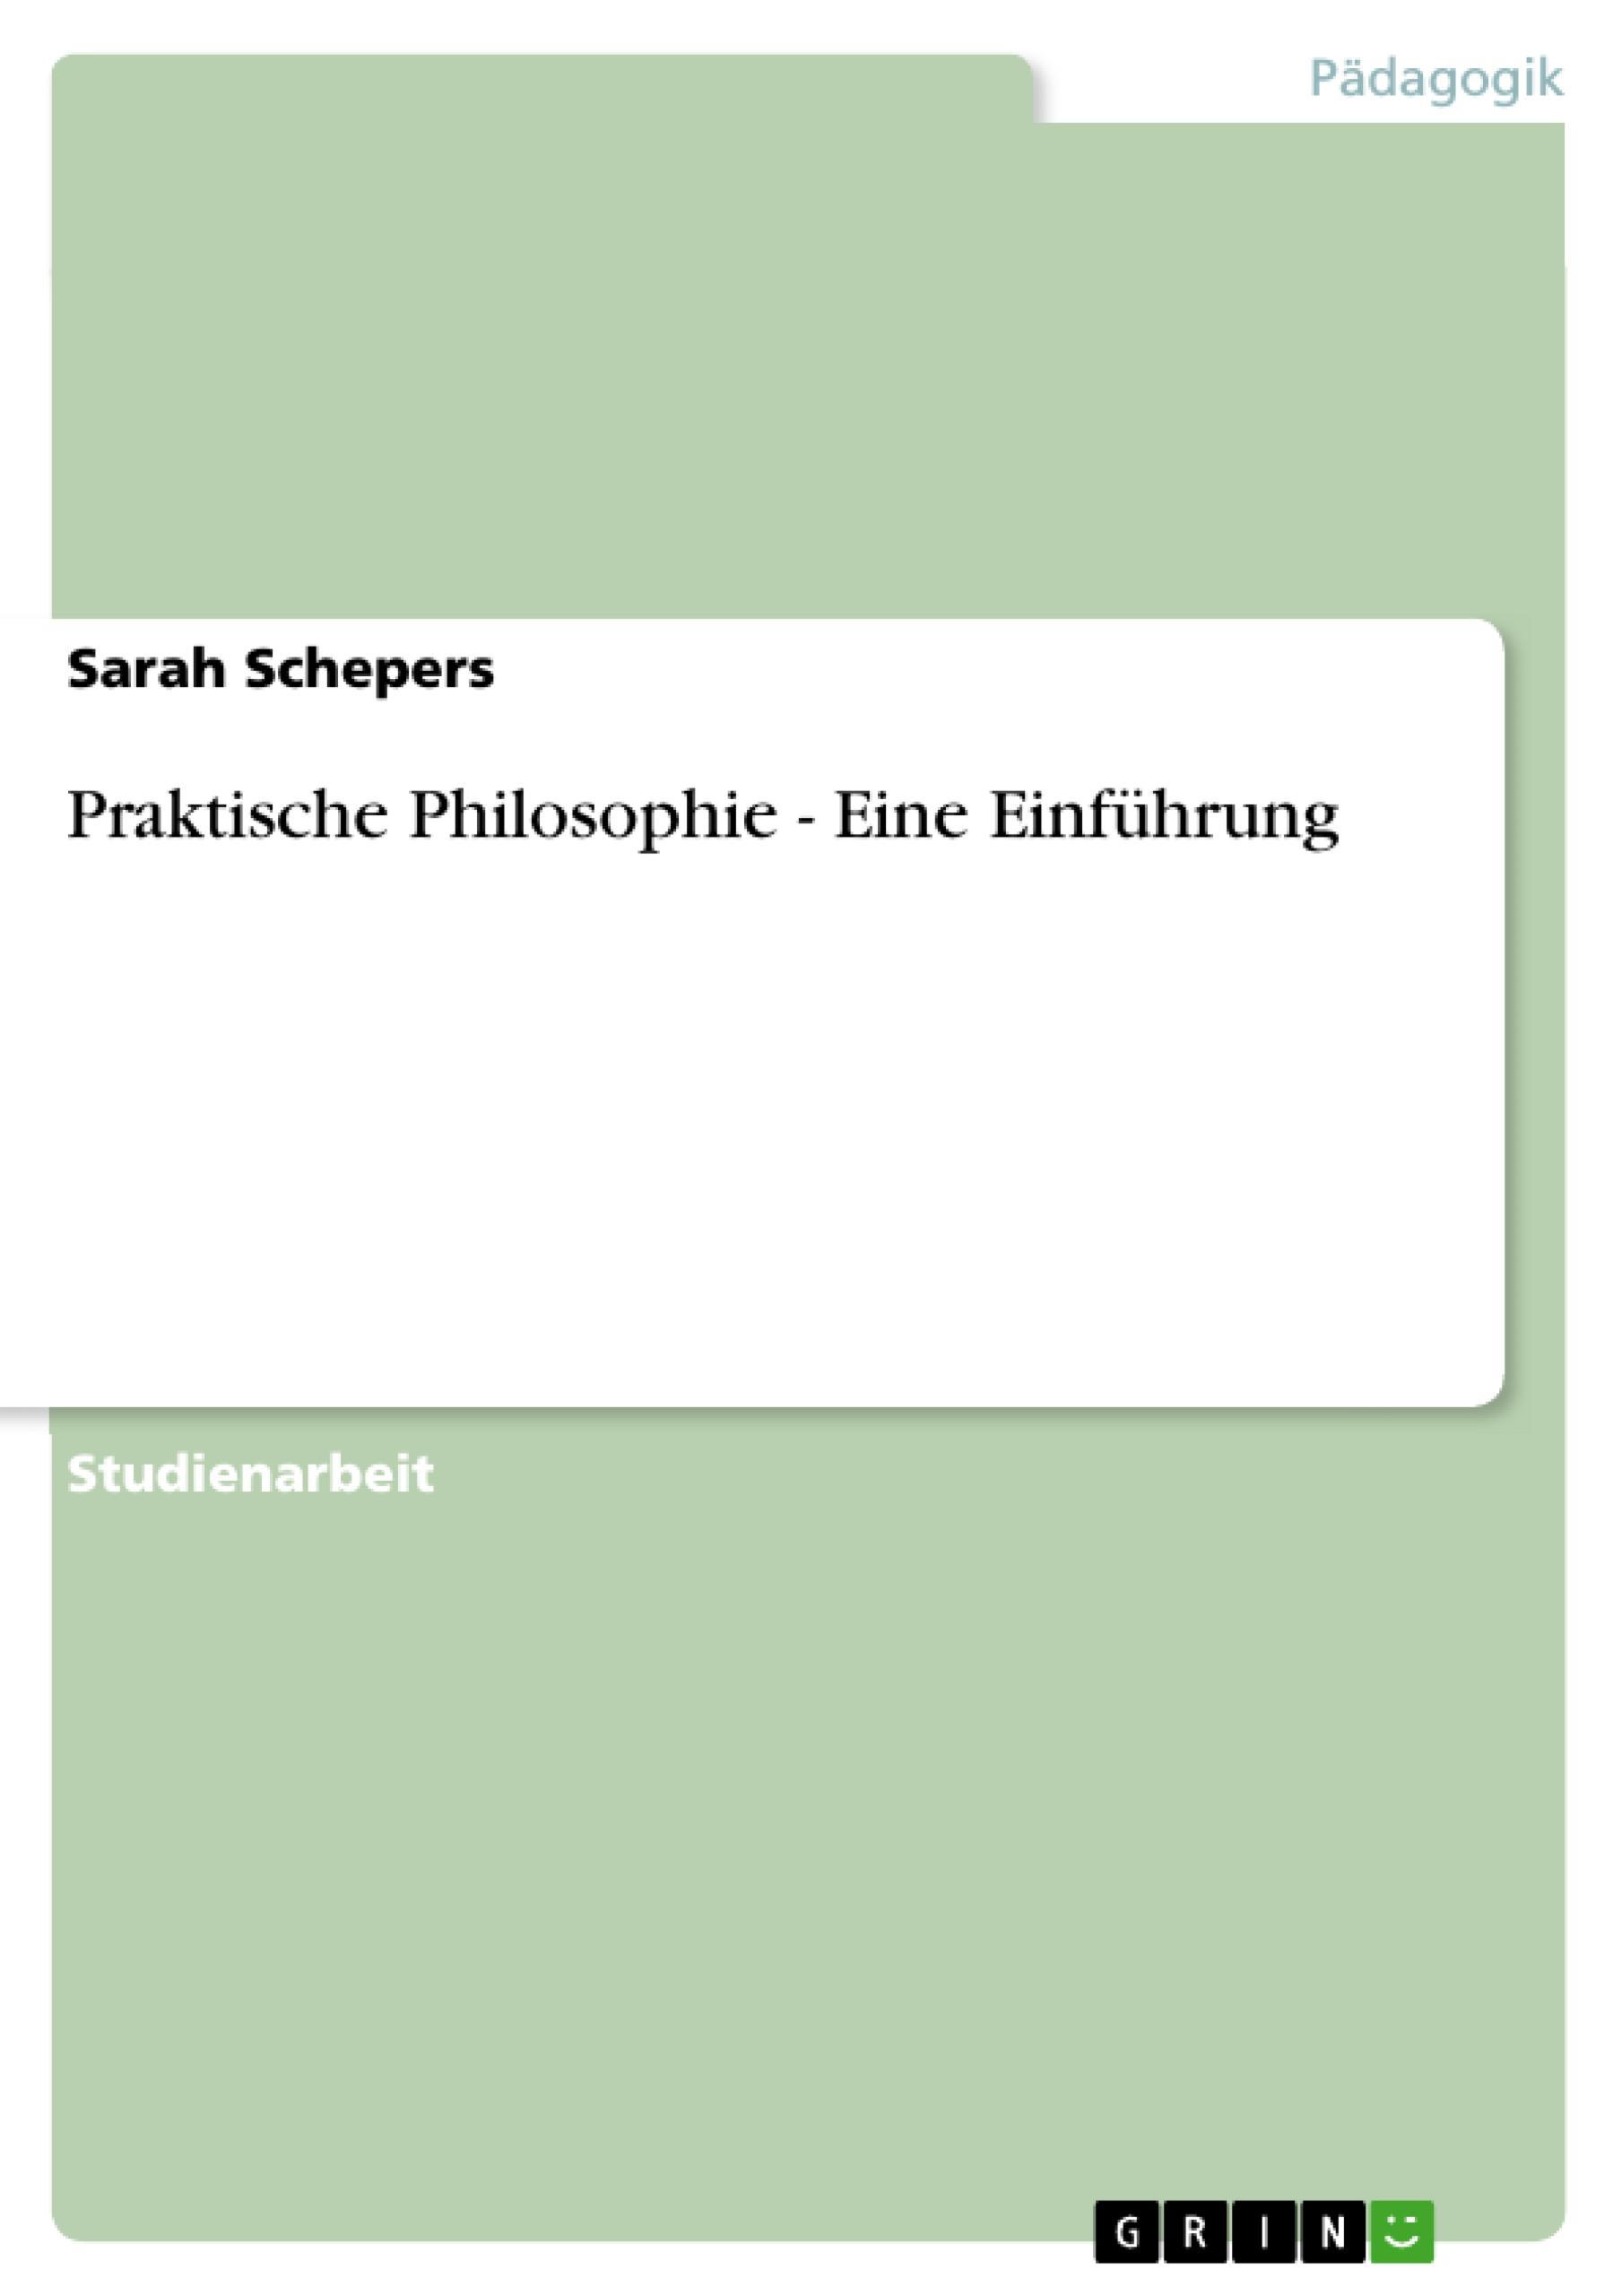 Praktische Philosophie - Eine Einfuehrung - Schepers, Sarah